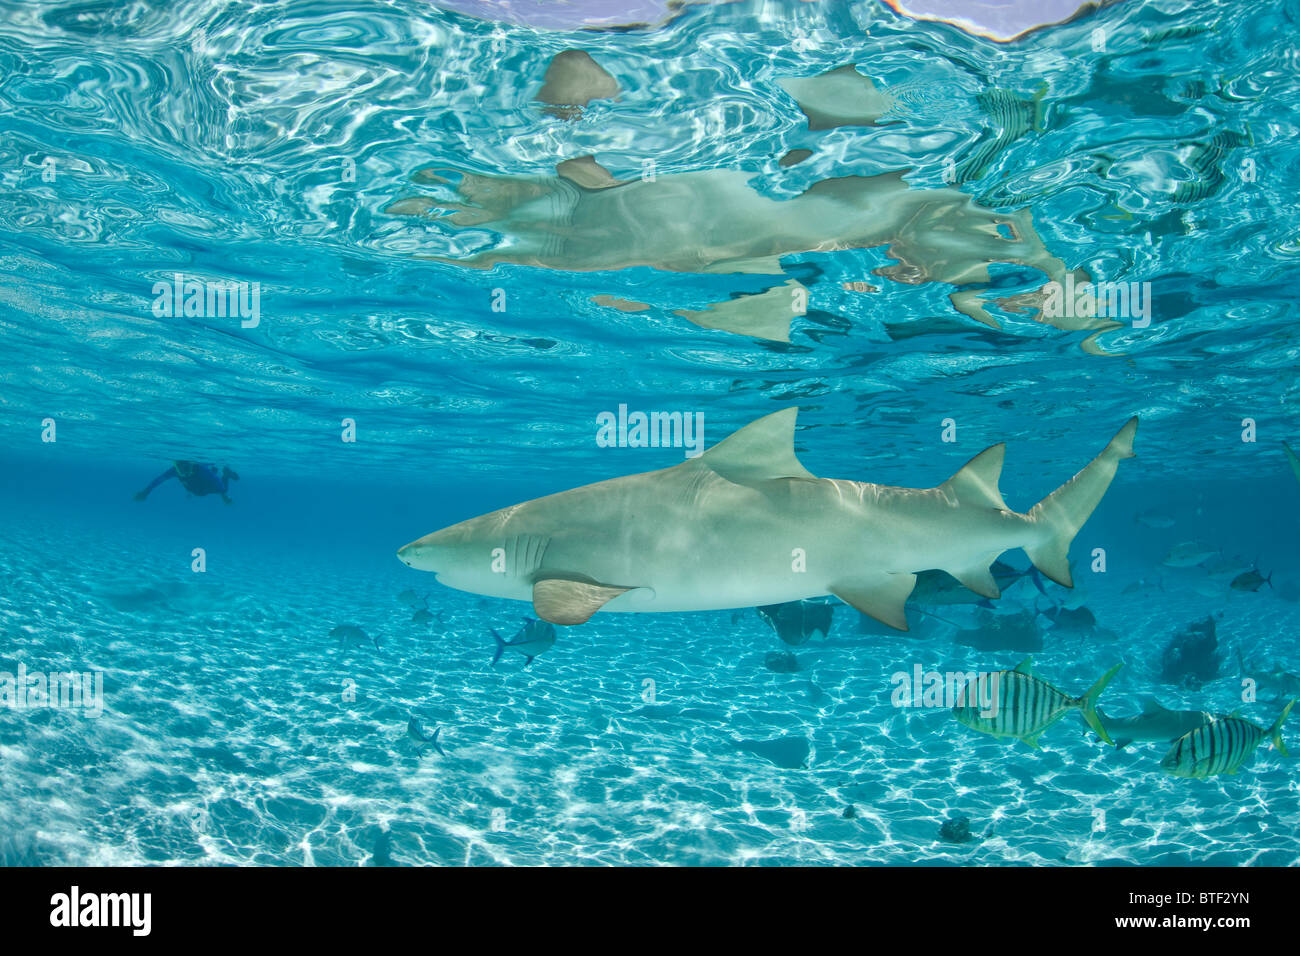 Un Sicklefin Lo squalo limone, Negaprion acutidens, nuota appena sotto la superficie con un snorkeler in background. Foto Stock